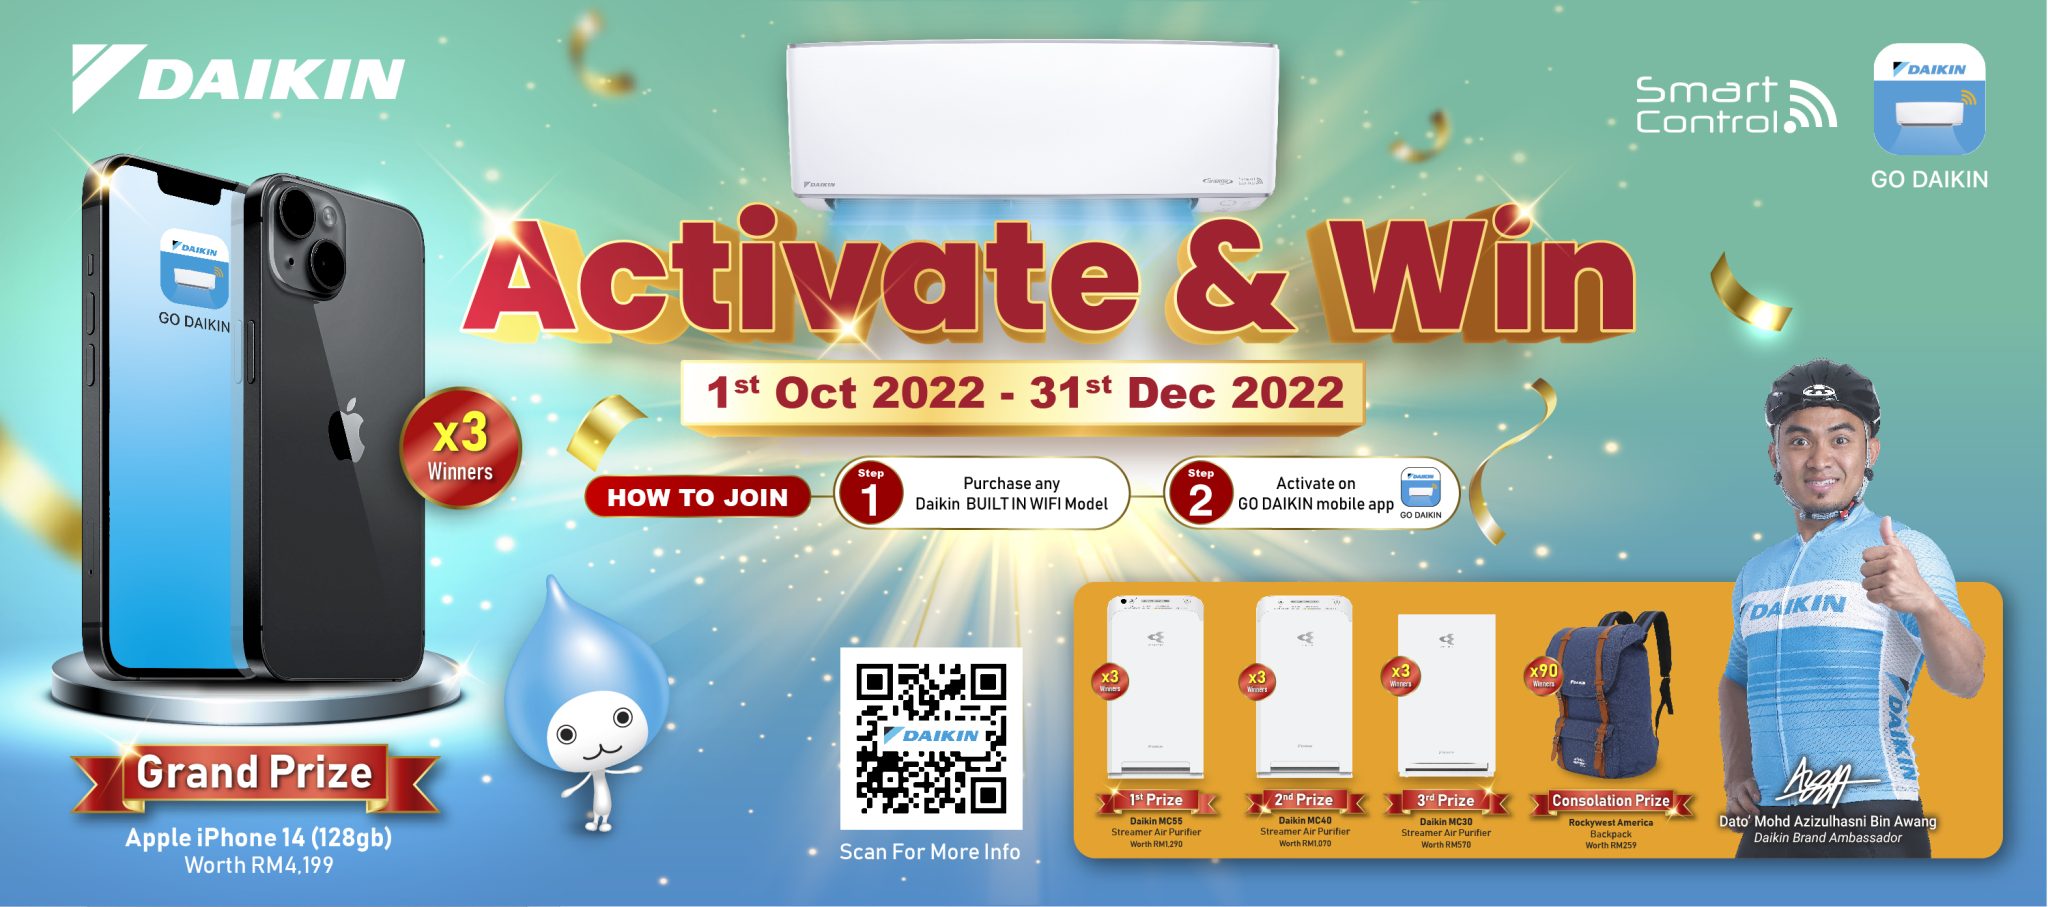 Go Daikin Activate & Win 2022 | Daikin Malaysia